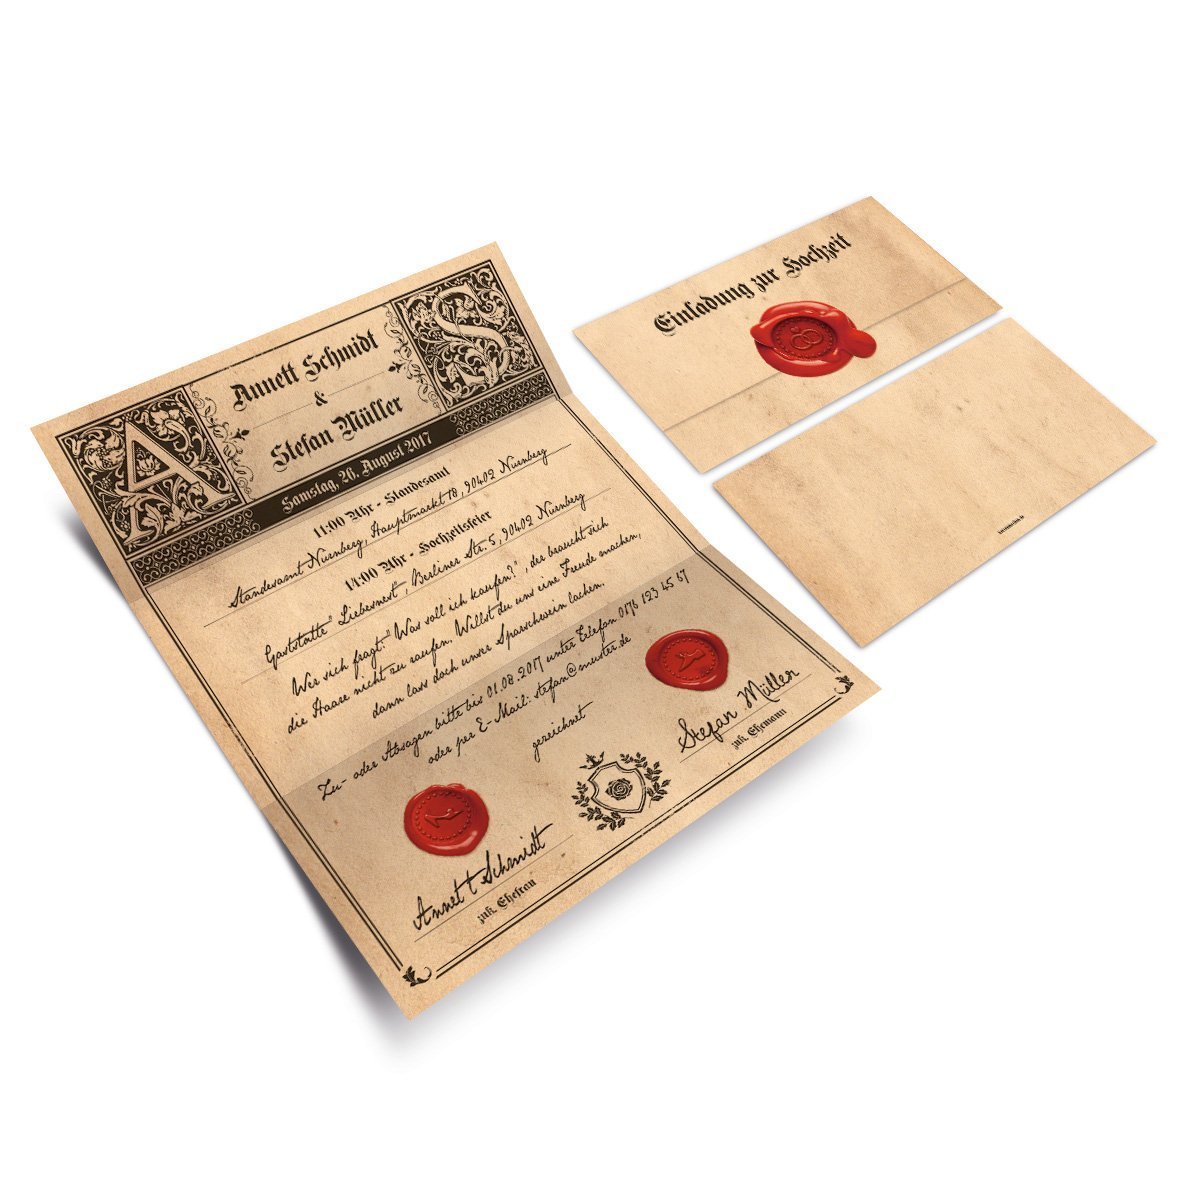 Kartenmachen.de Personalisierte Hochzeitseinladungen ab 10 Stück als Siegelbrief selbst gestalten inkl. Aufkleber im Hingucker Wickelfalz Sonderformat